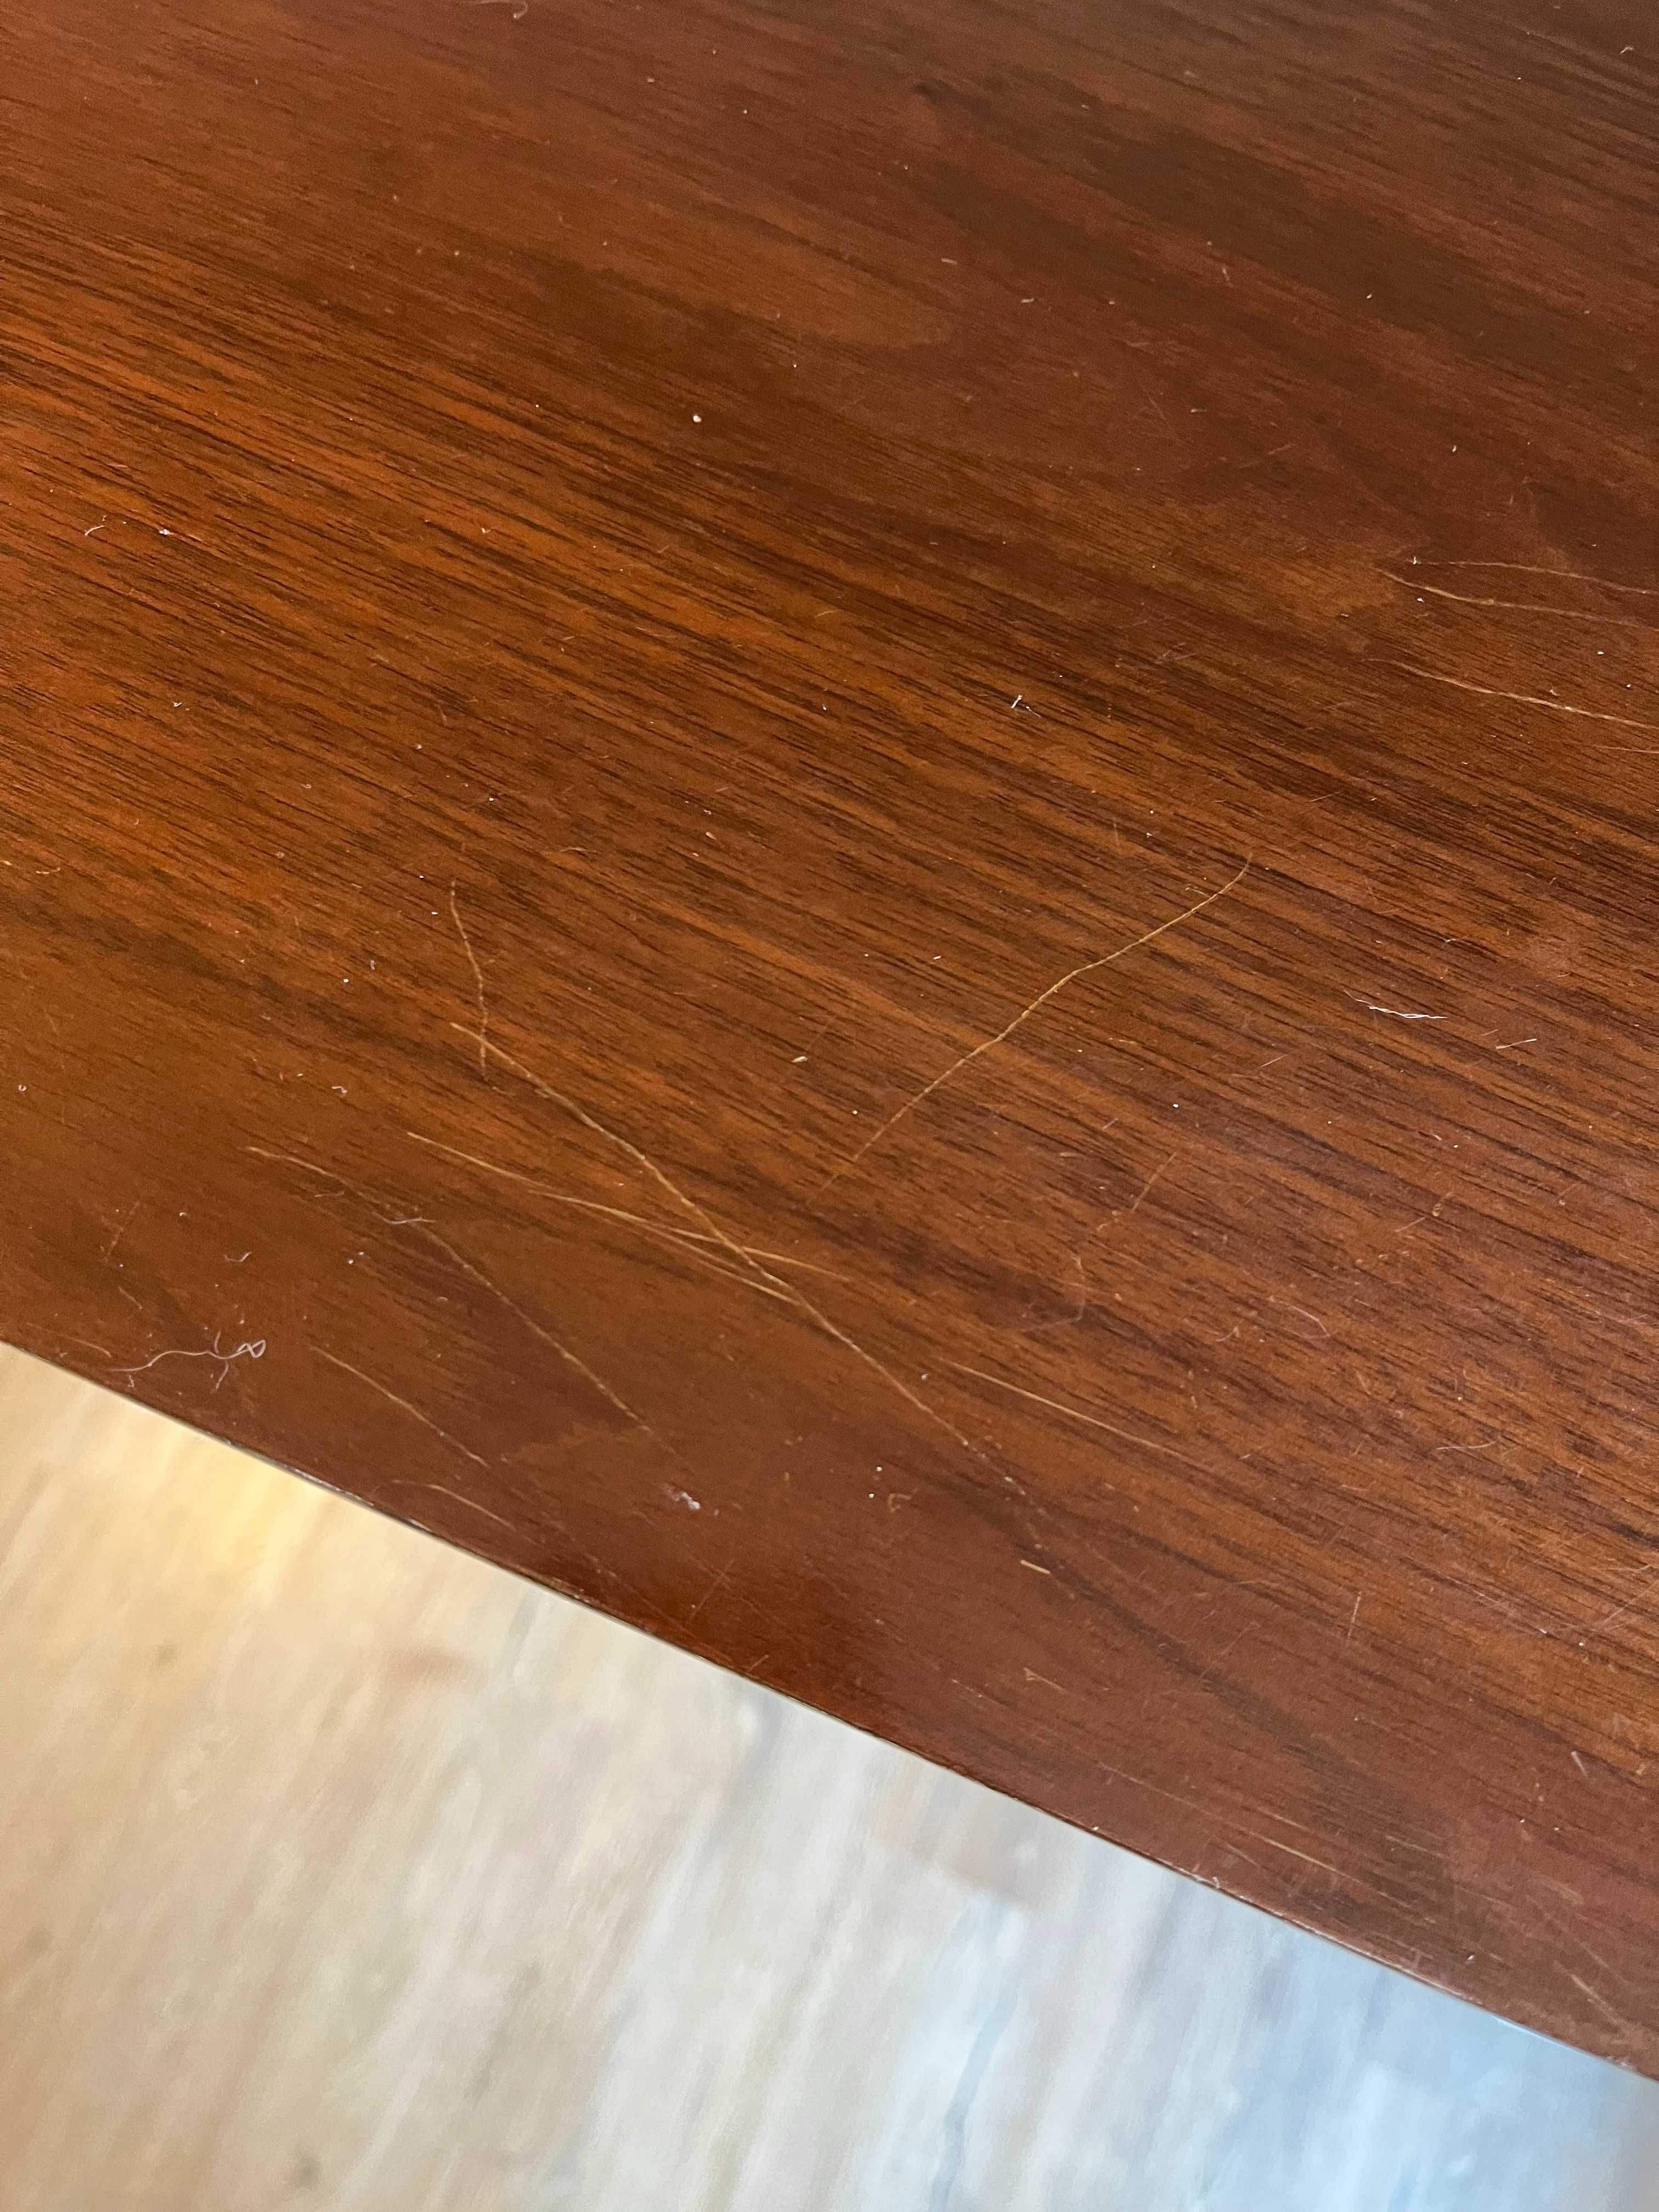 Blat biurka z MDF - kolor Orzech